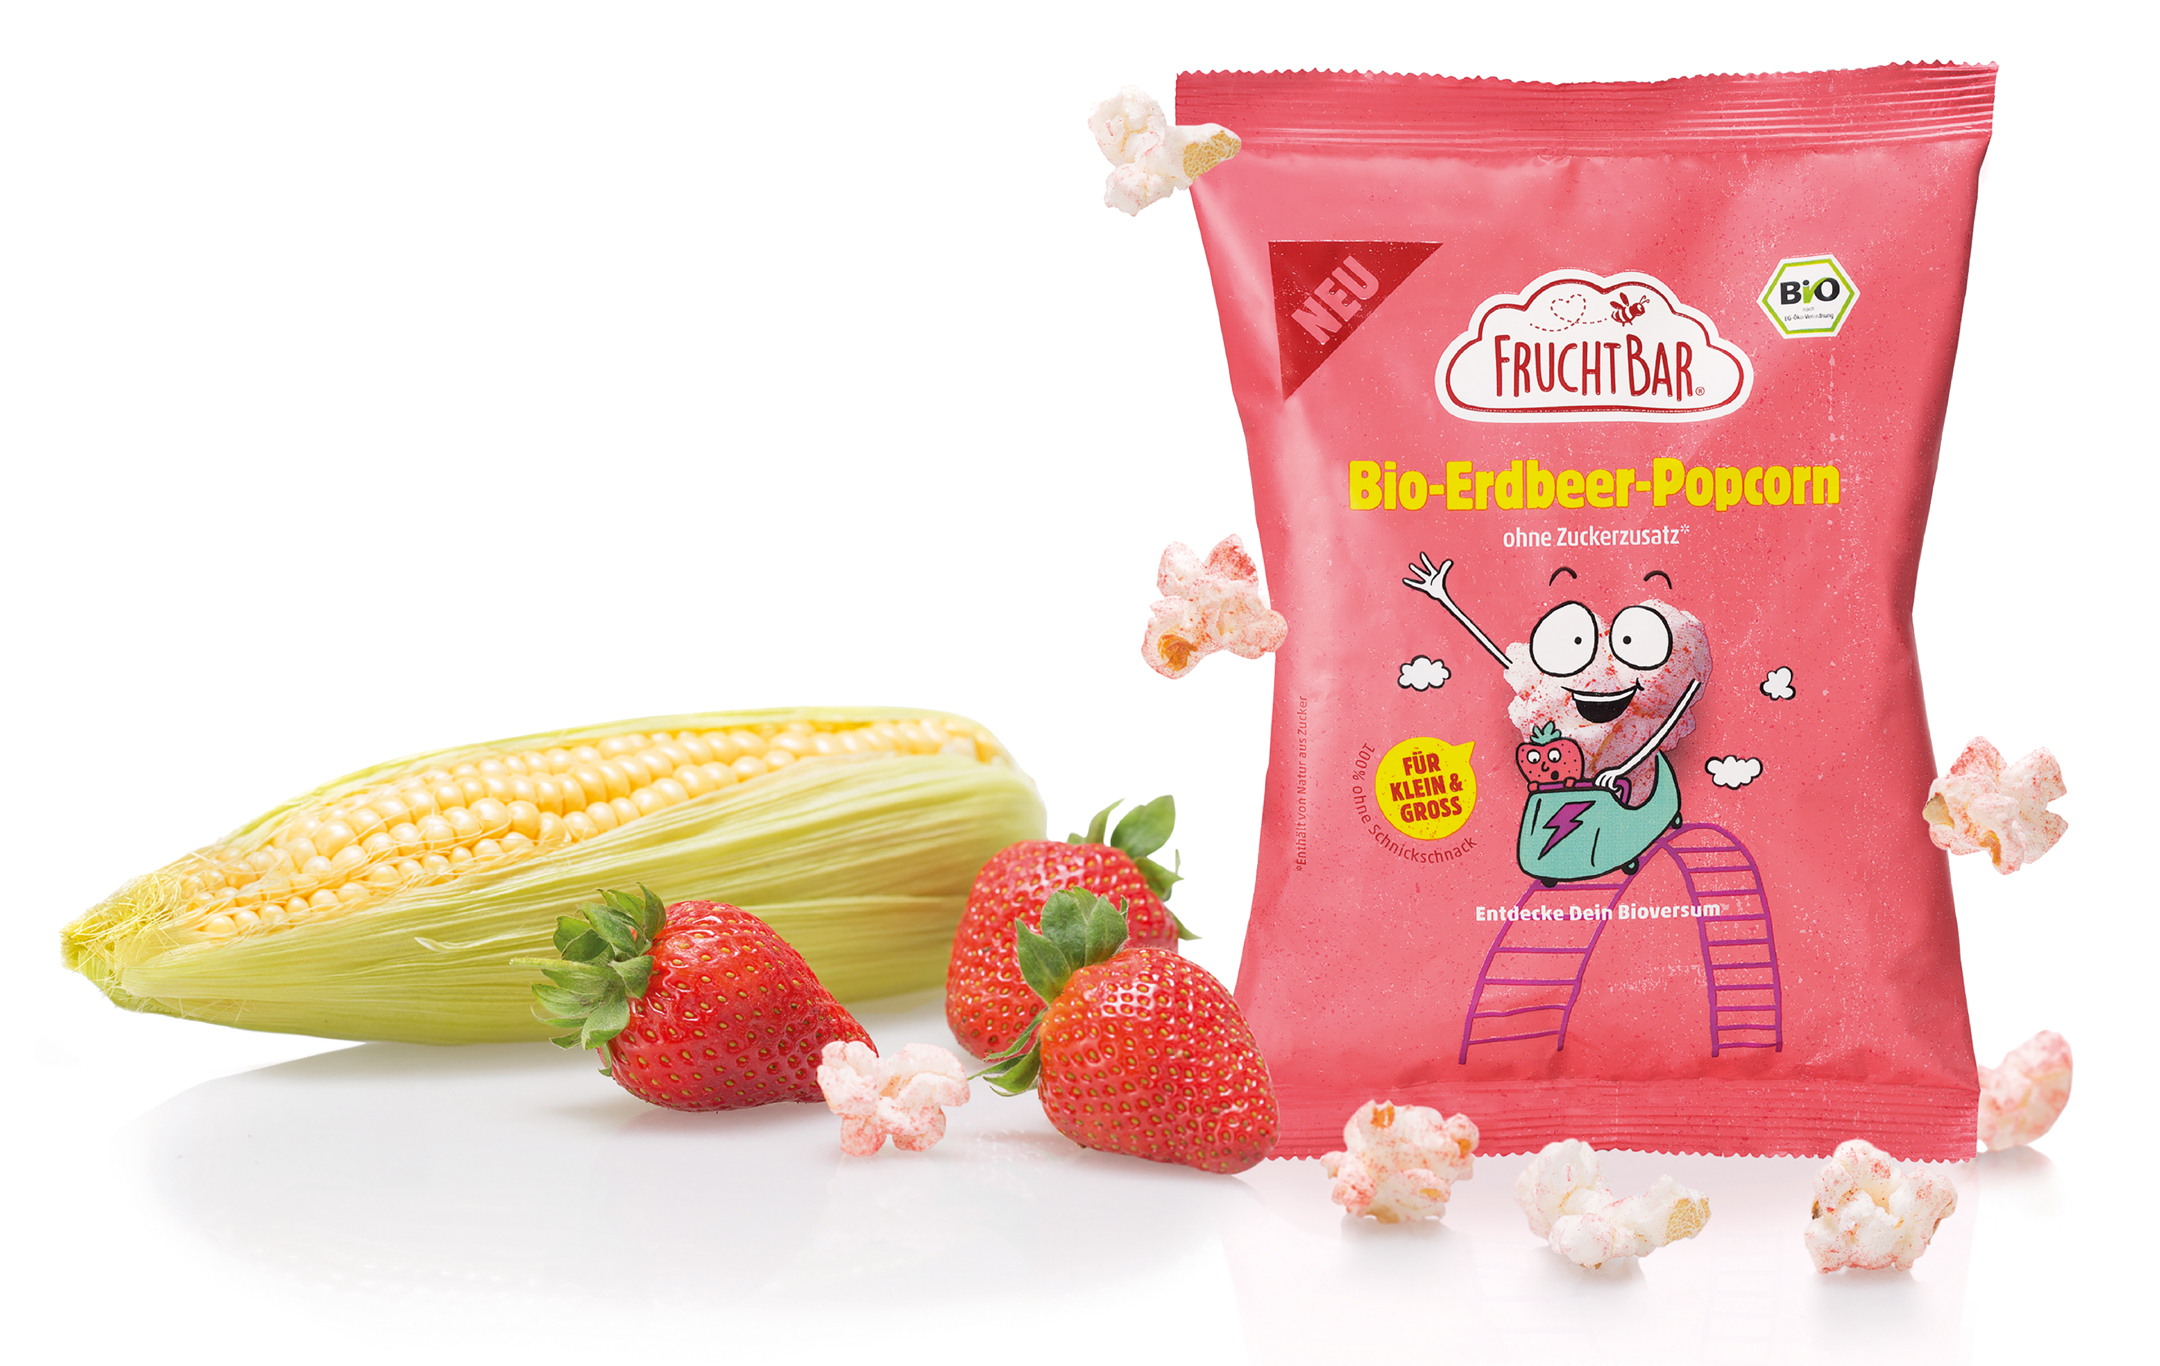 FruchtBar Bio-Erdbeer-Popcorn Verpackung mit Maiskolben und Erdbeeren